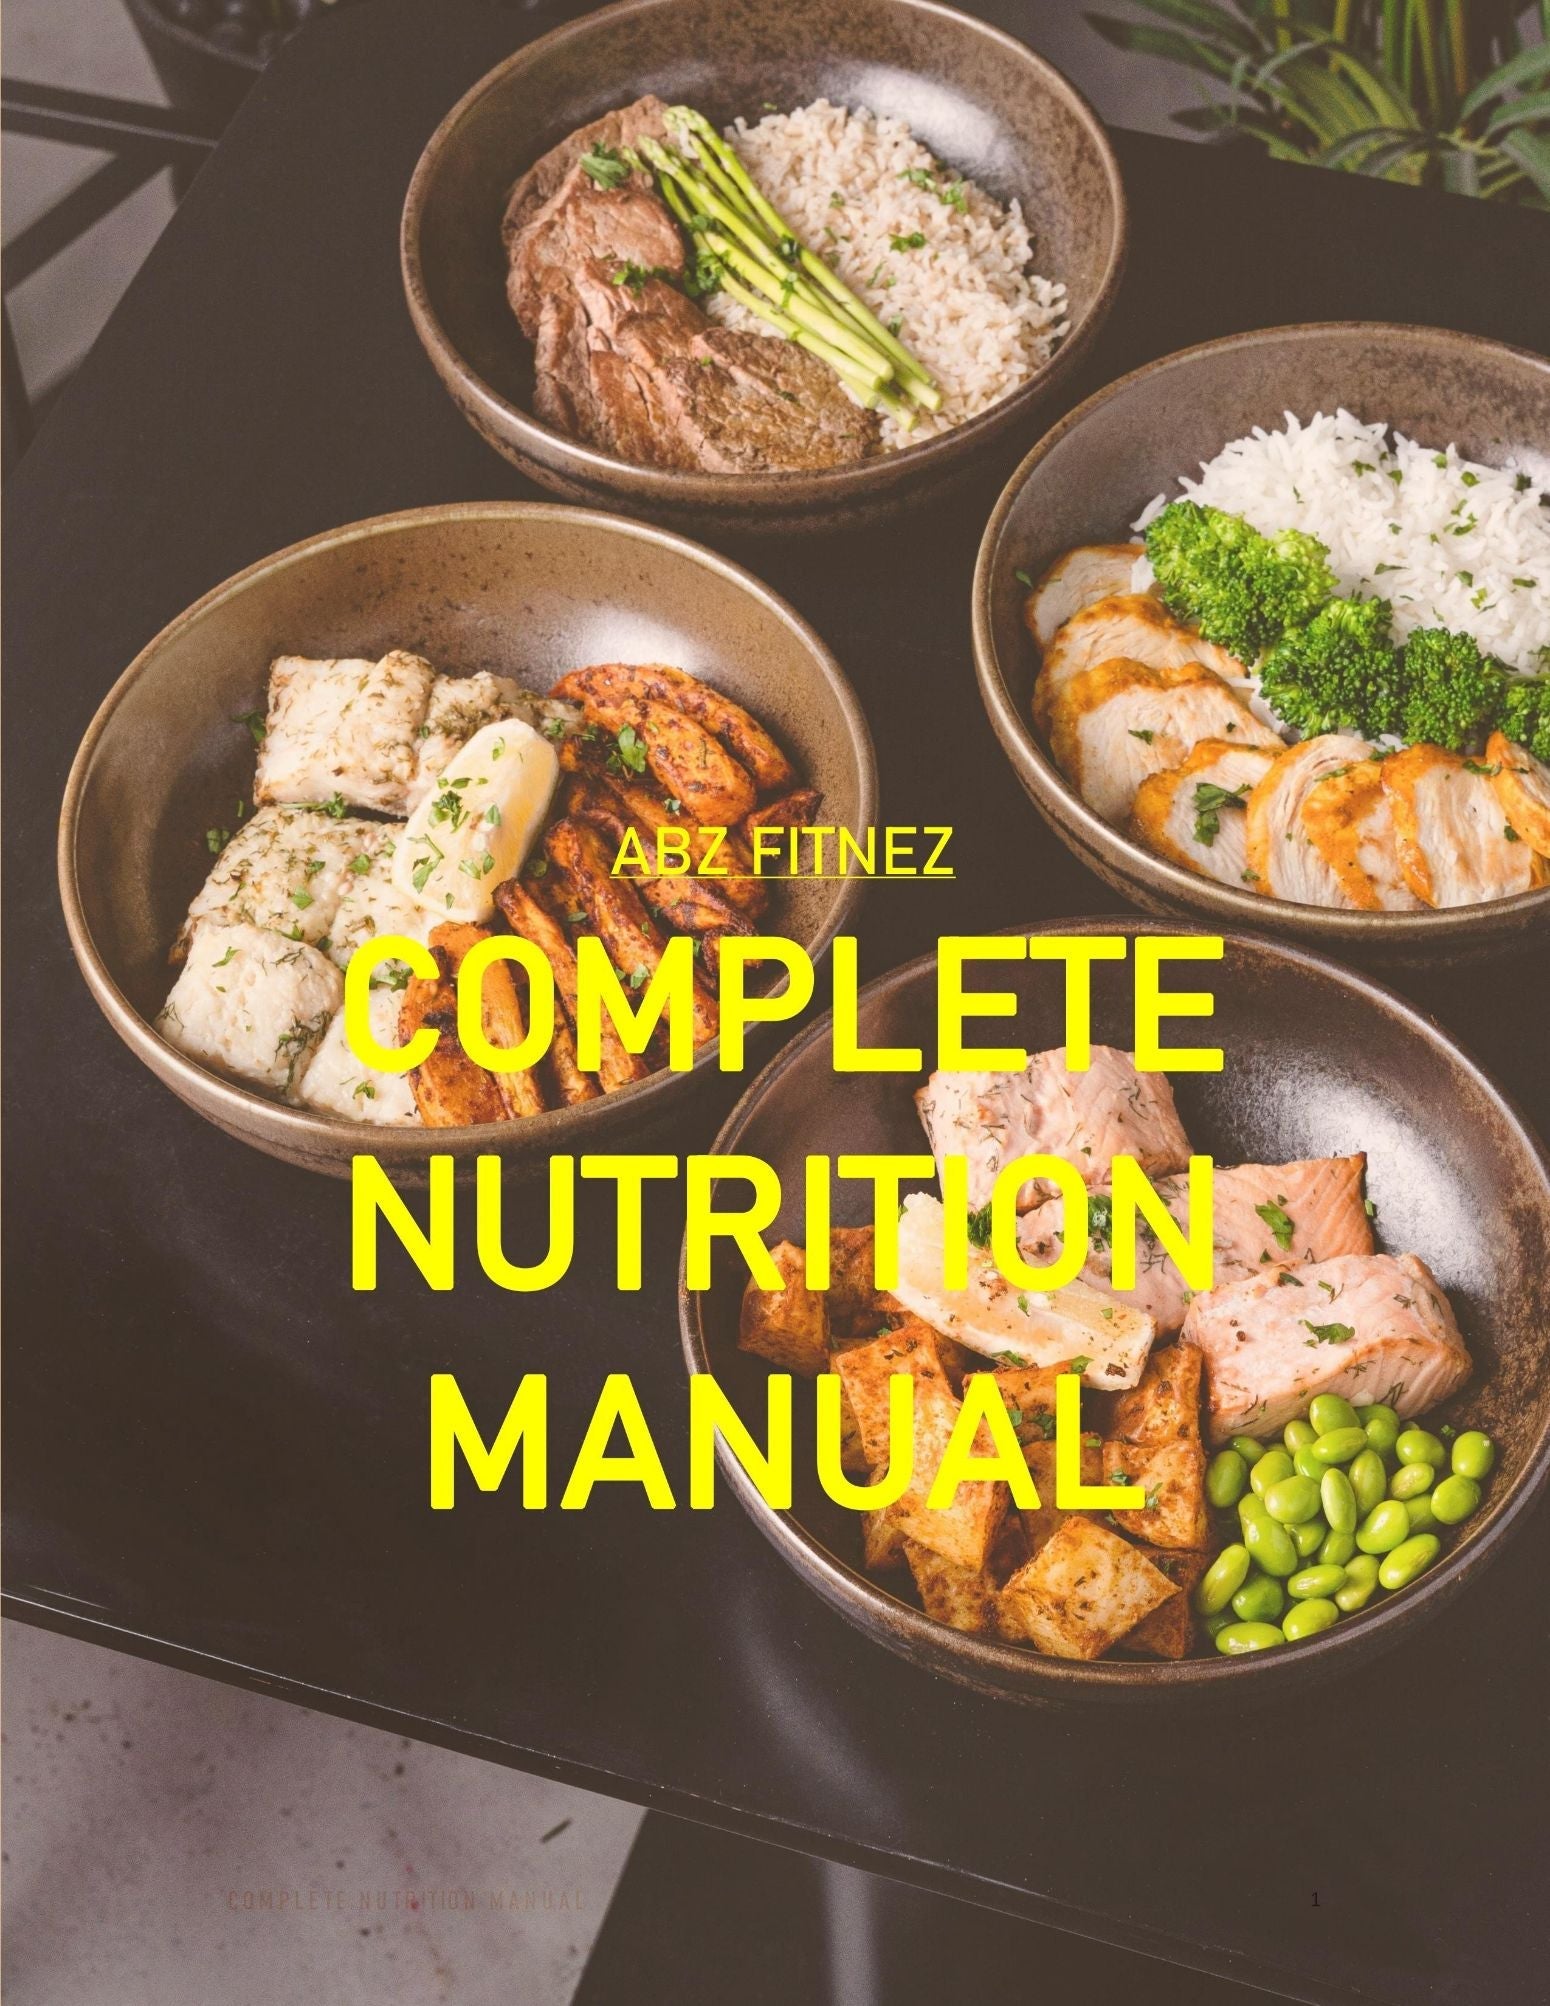 Complete Nutrition Plan - Abzfitnez